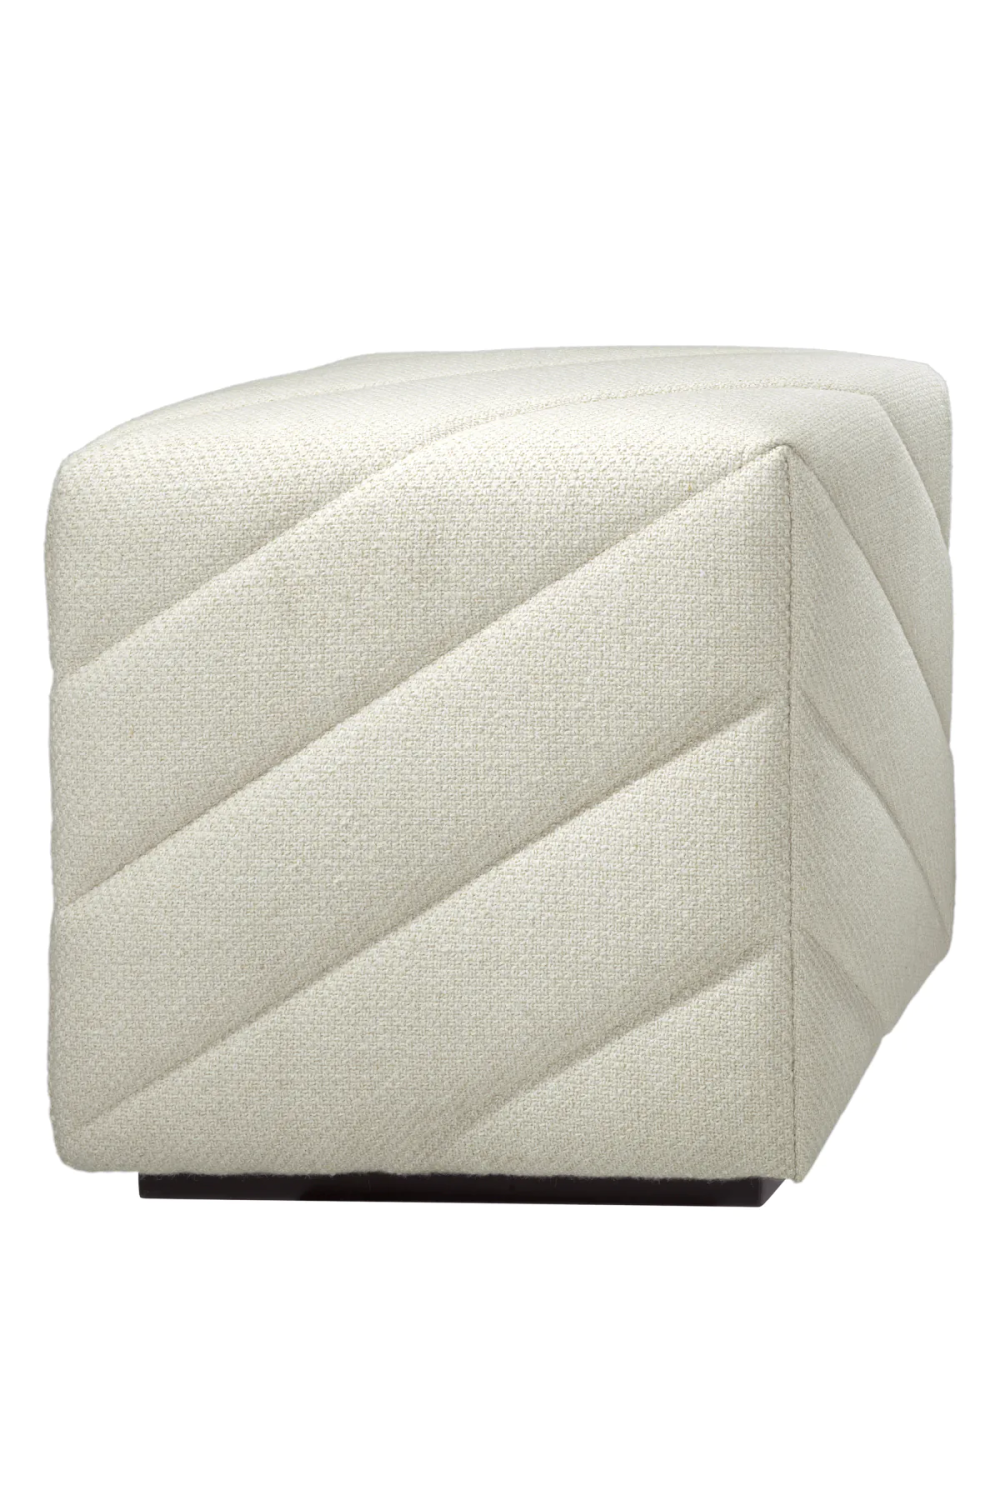 Upholstered Modern Stool | Eichholtz Avellino | Oroa.com